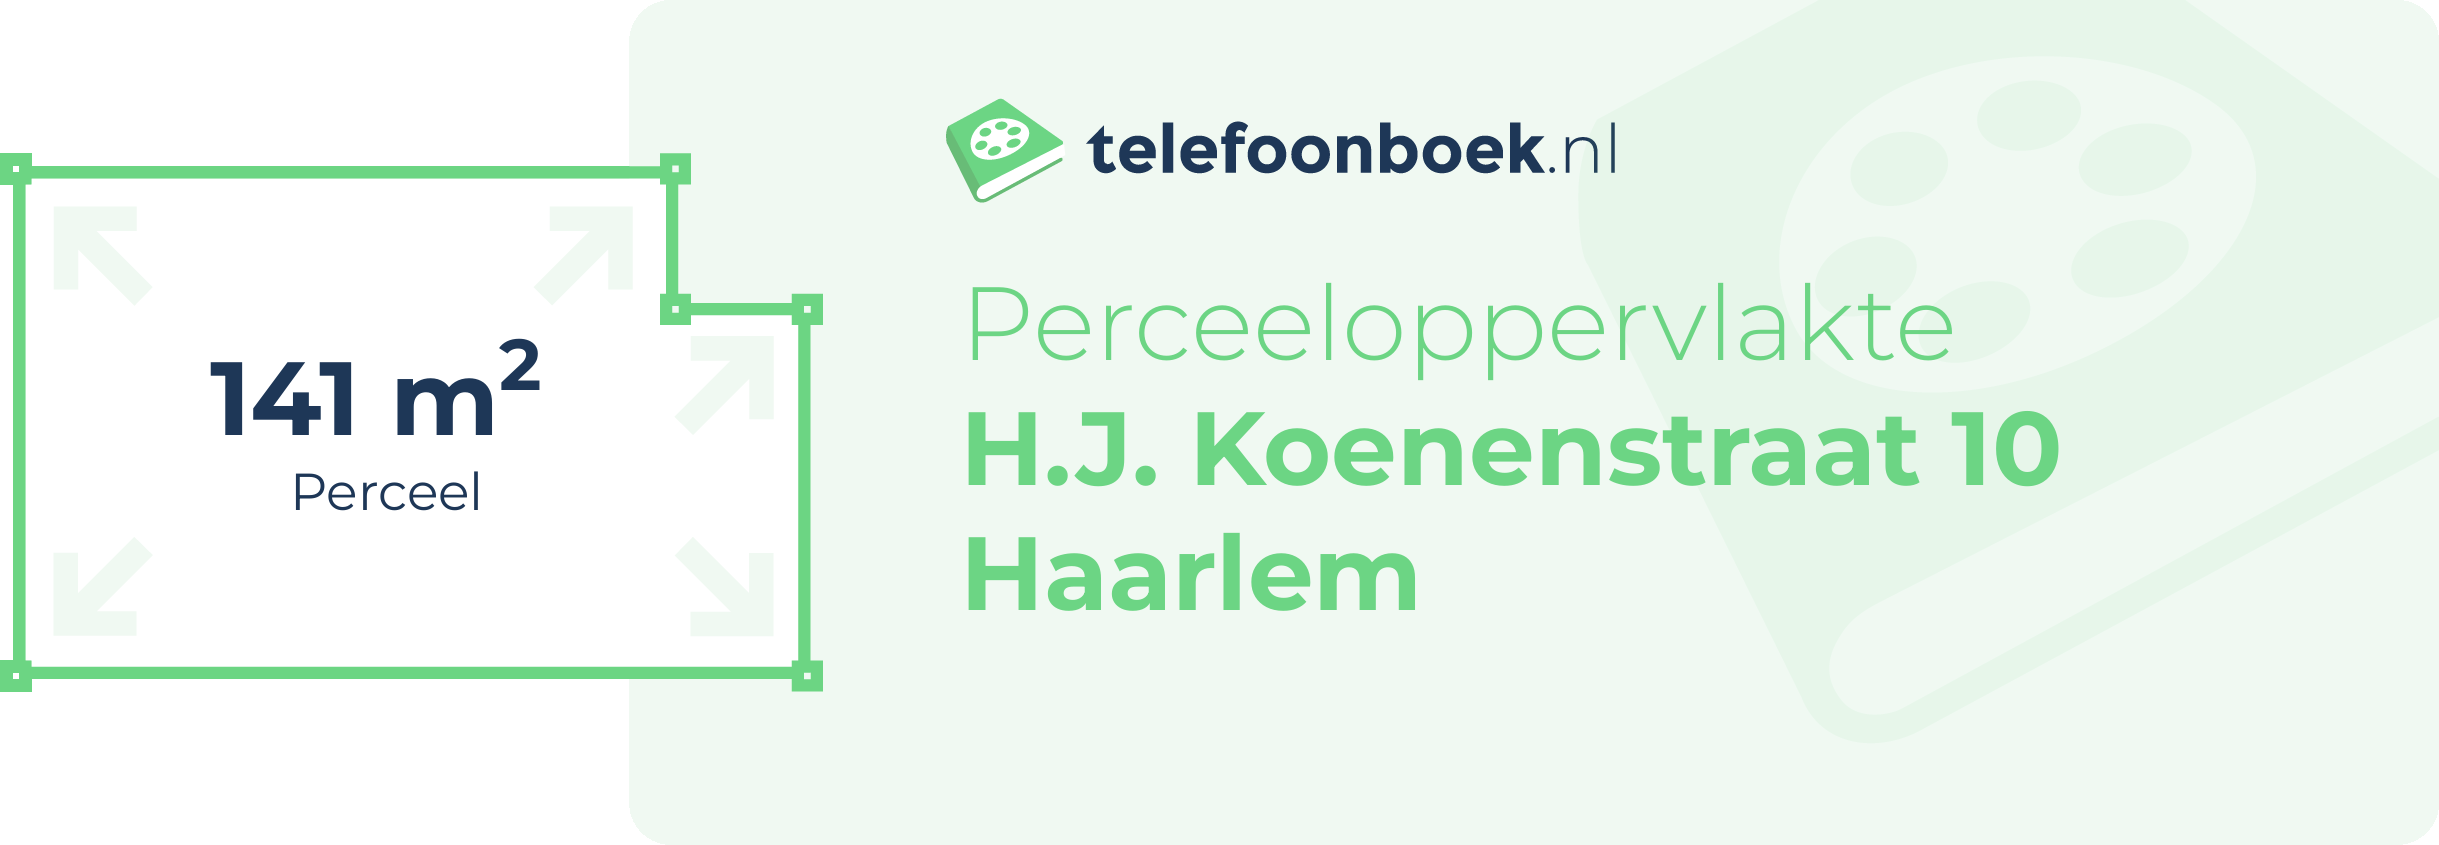 Perceeloppervlakte H.J. Koenenstraat 10 Haarlem